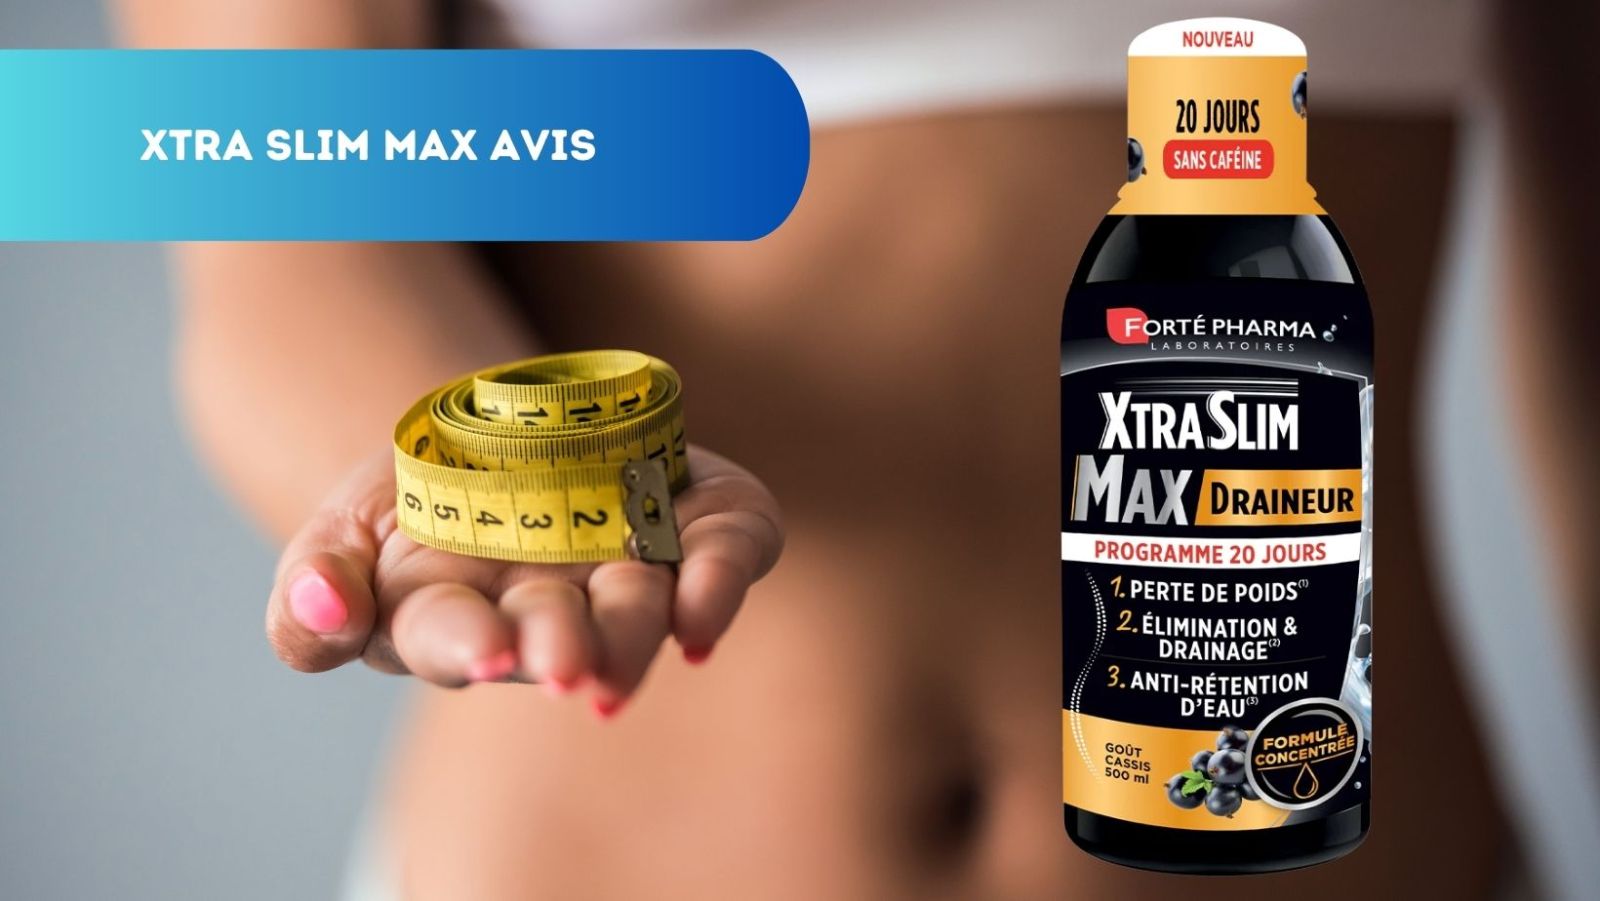 Avis Xtra Slim Max Draineur : une formule naturelle pour drainer et mincir